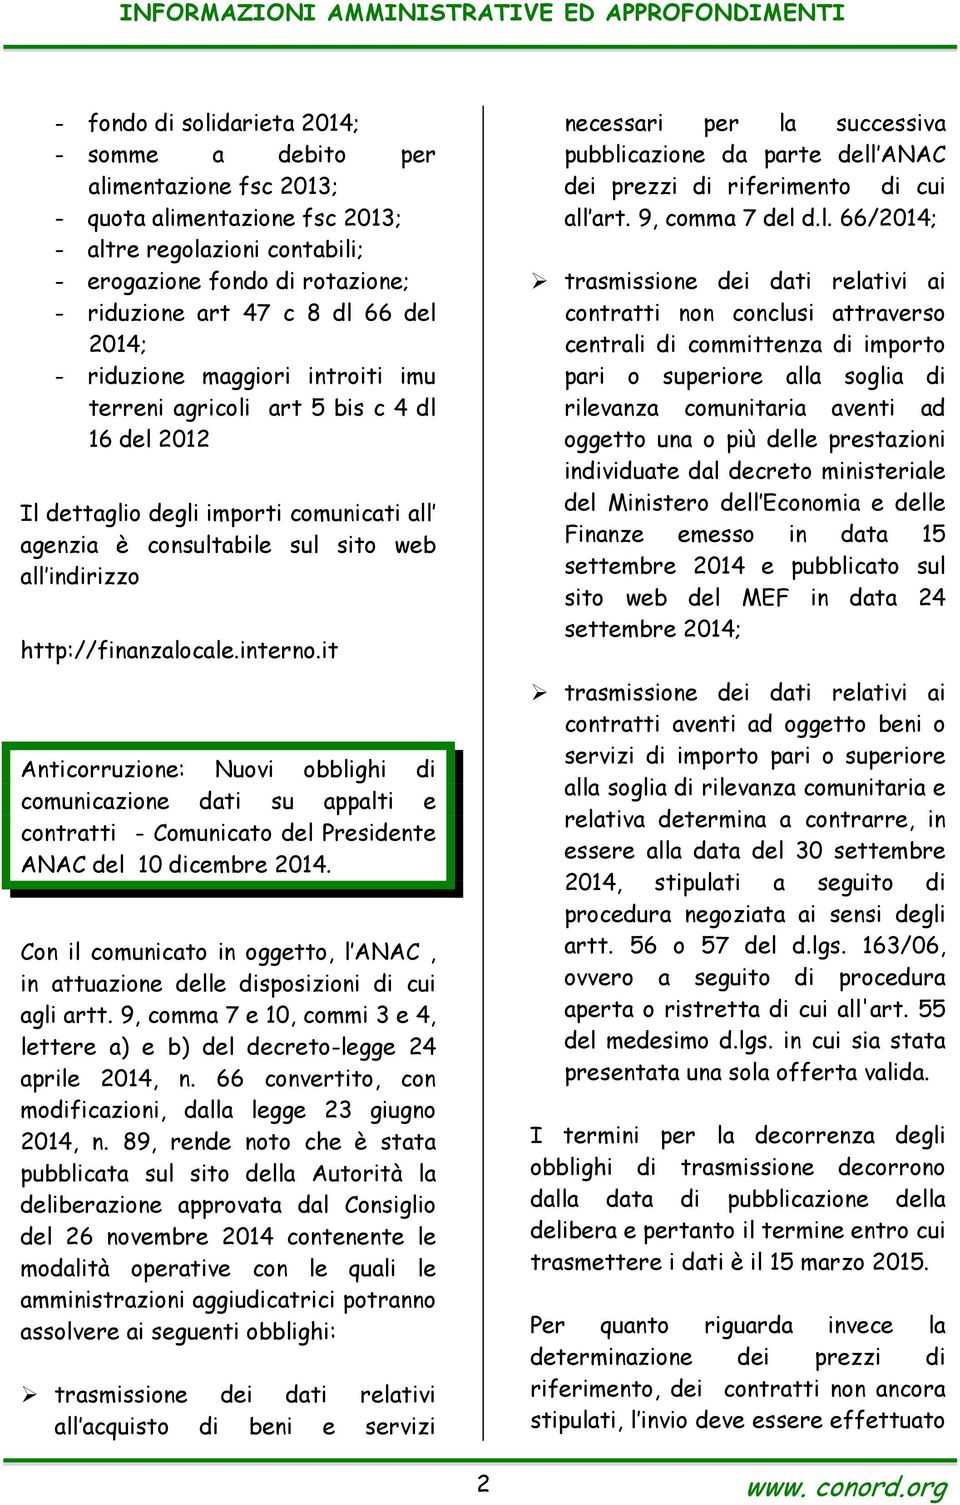 http://finanzalocale.interno.it Anticorruzione: Nuovi obblighi di comunicazione dati su appalti e contratti - Comunicato del Presidente ANAC del 10 dicembre 2014.